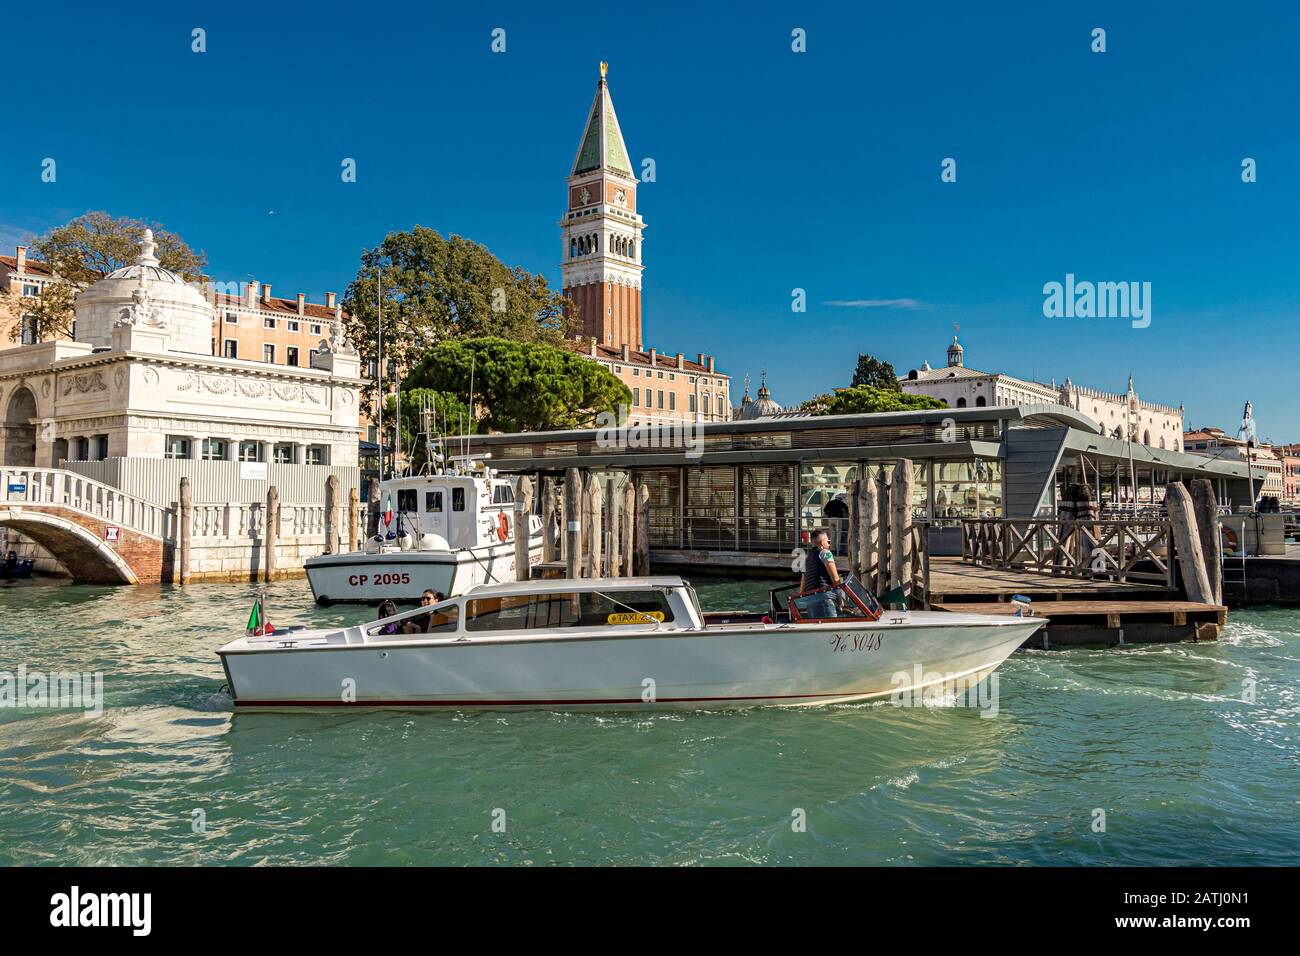 Un taxi acqueo di Venezia con due passeggeri vi condurrà verso il Canal Grande, con il Campanile di San Marco in lontananza, Venezia, Italia Foto Stock